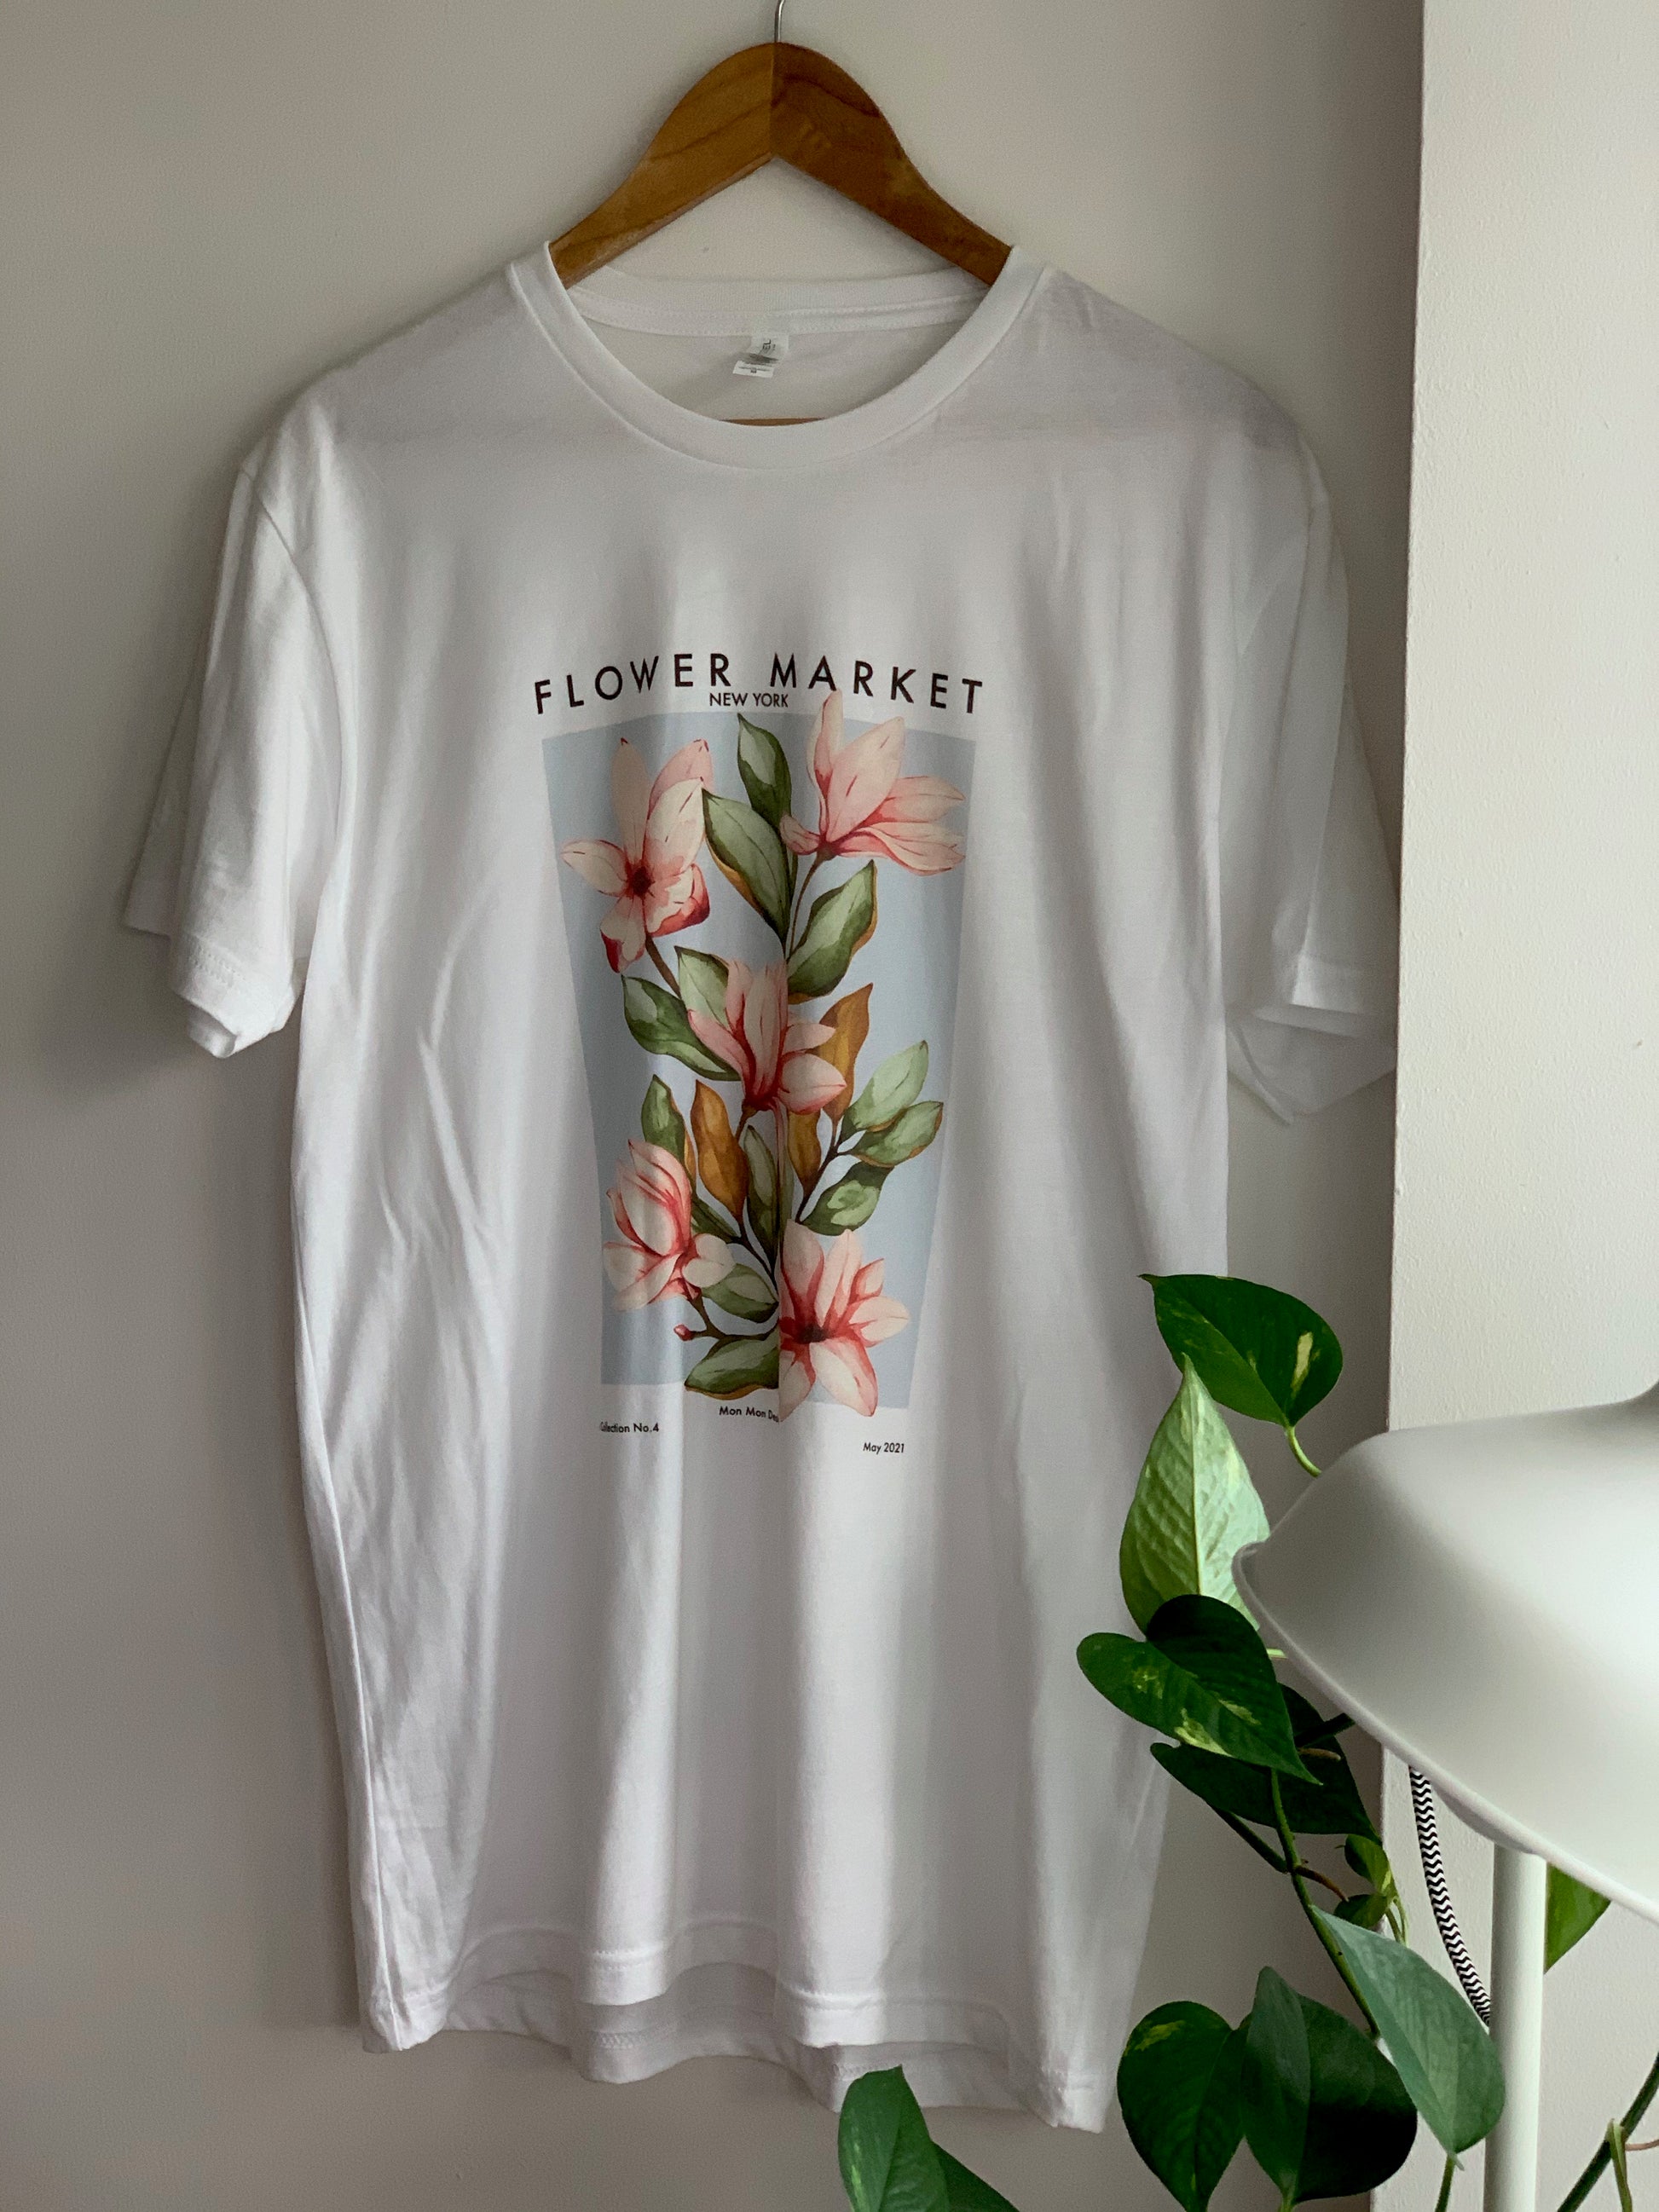 Flower Market No.1 New York - T-shirt